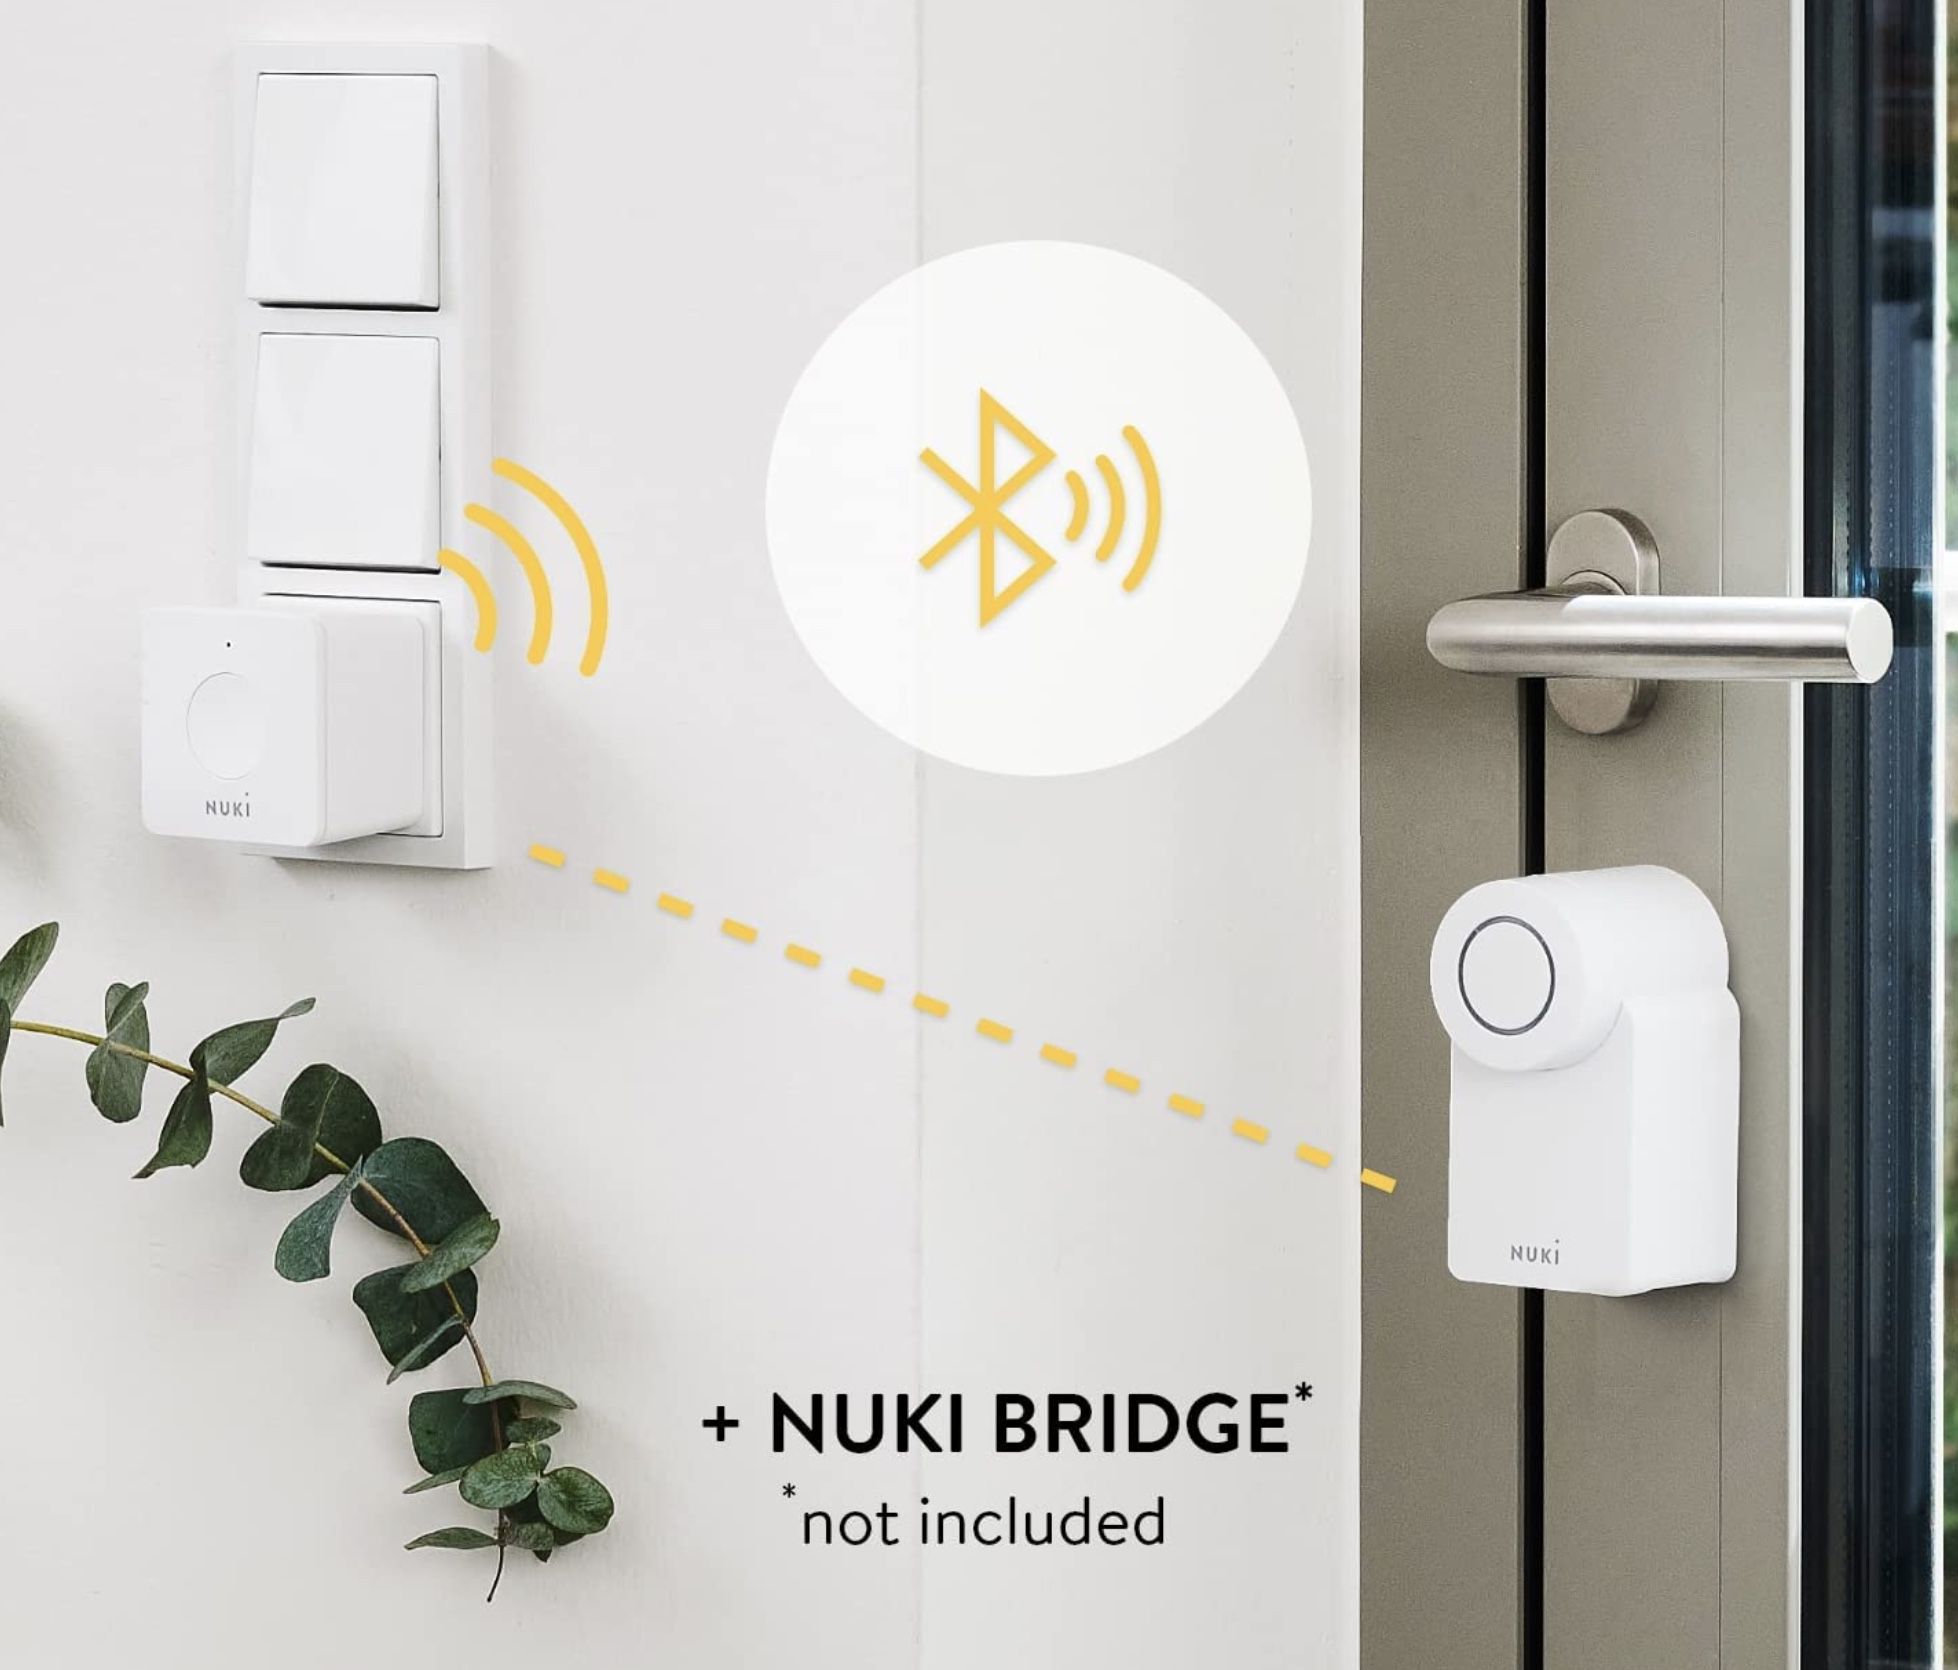 Nuki Smart Lock 3.0 smartes Türschloss für schlüssellosen Zutritt für 125€ (statt 157€)